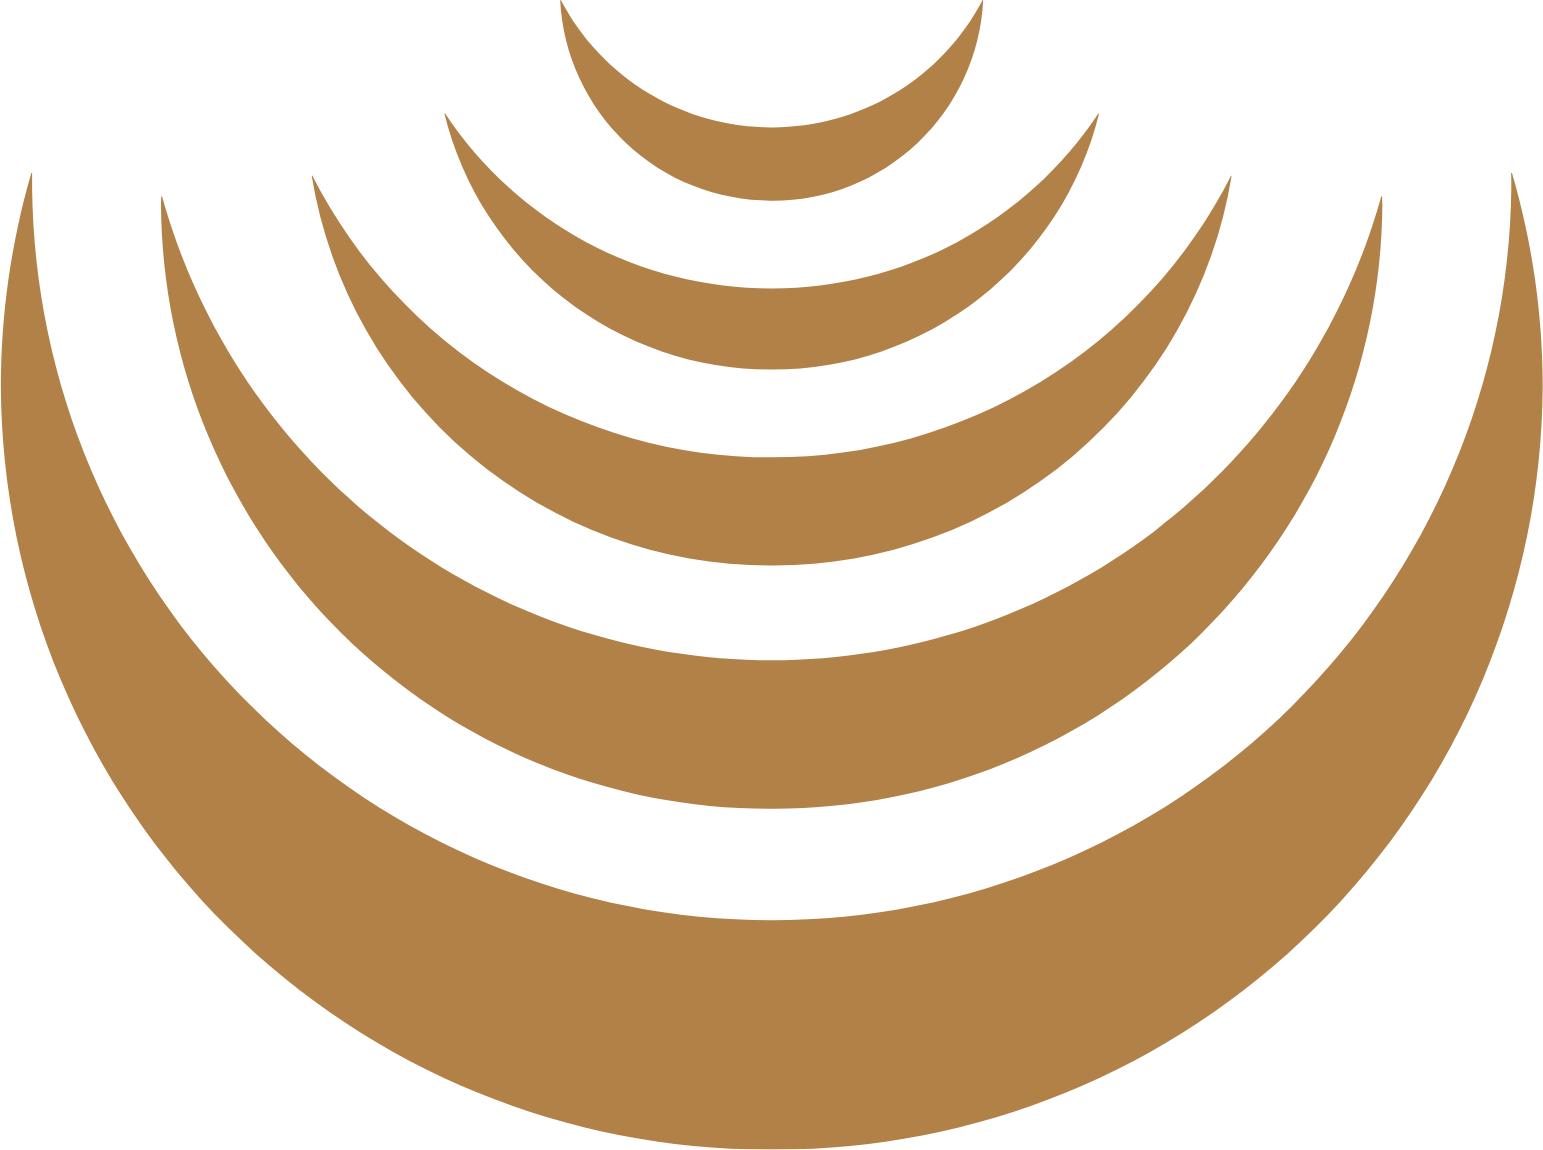 Masraf Al Rayan logo (transparent PNG)